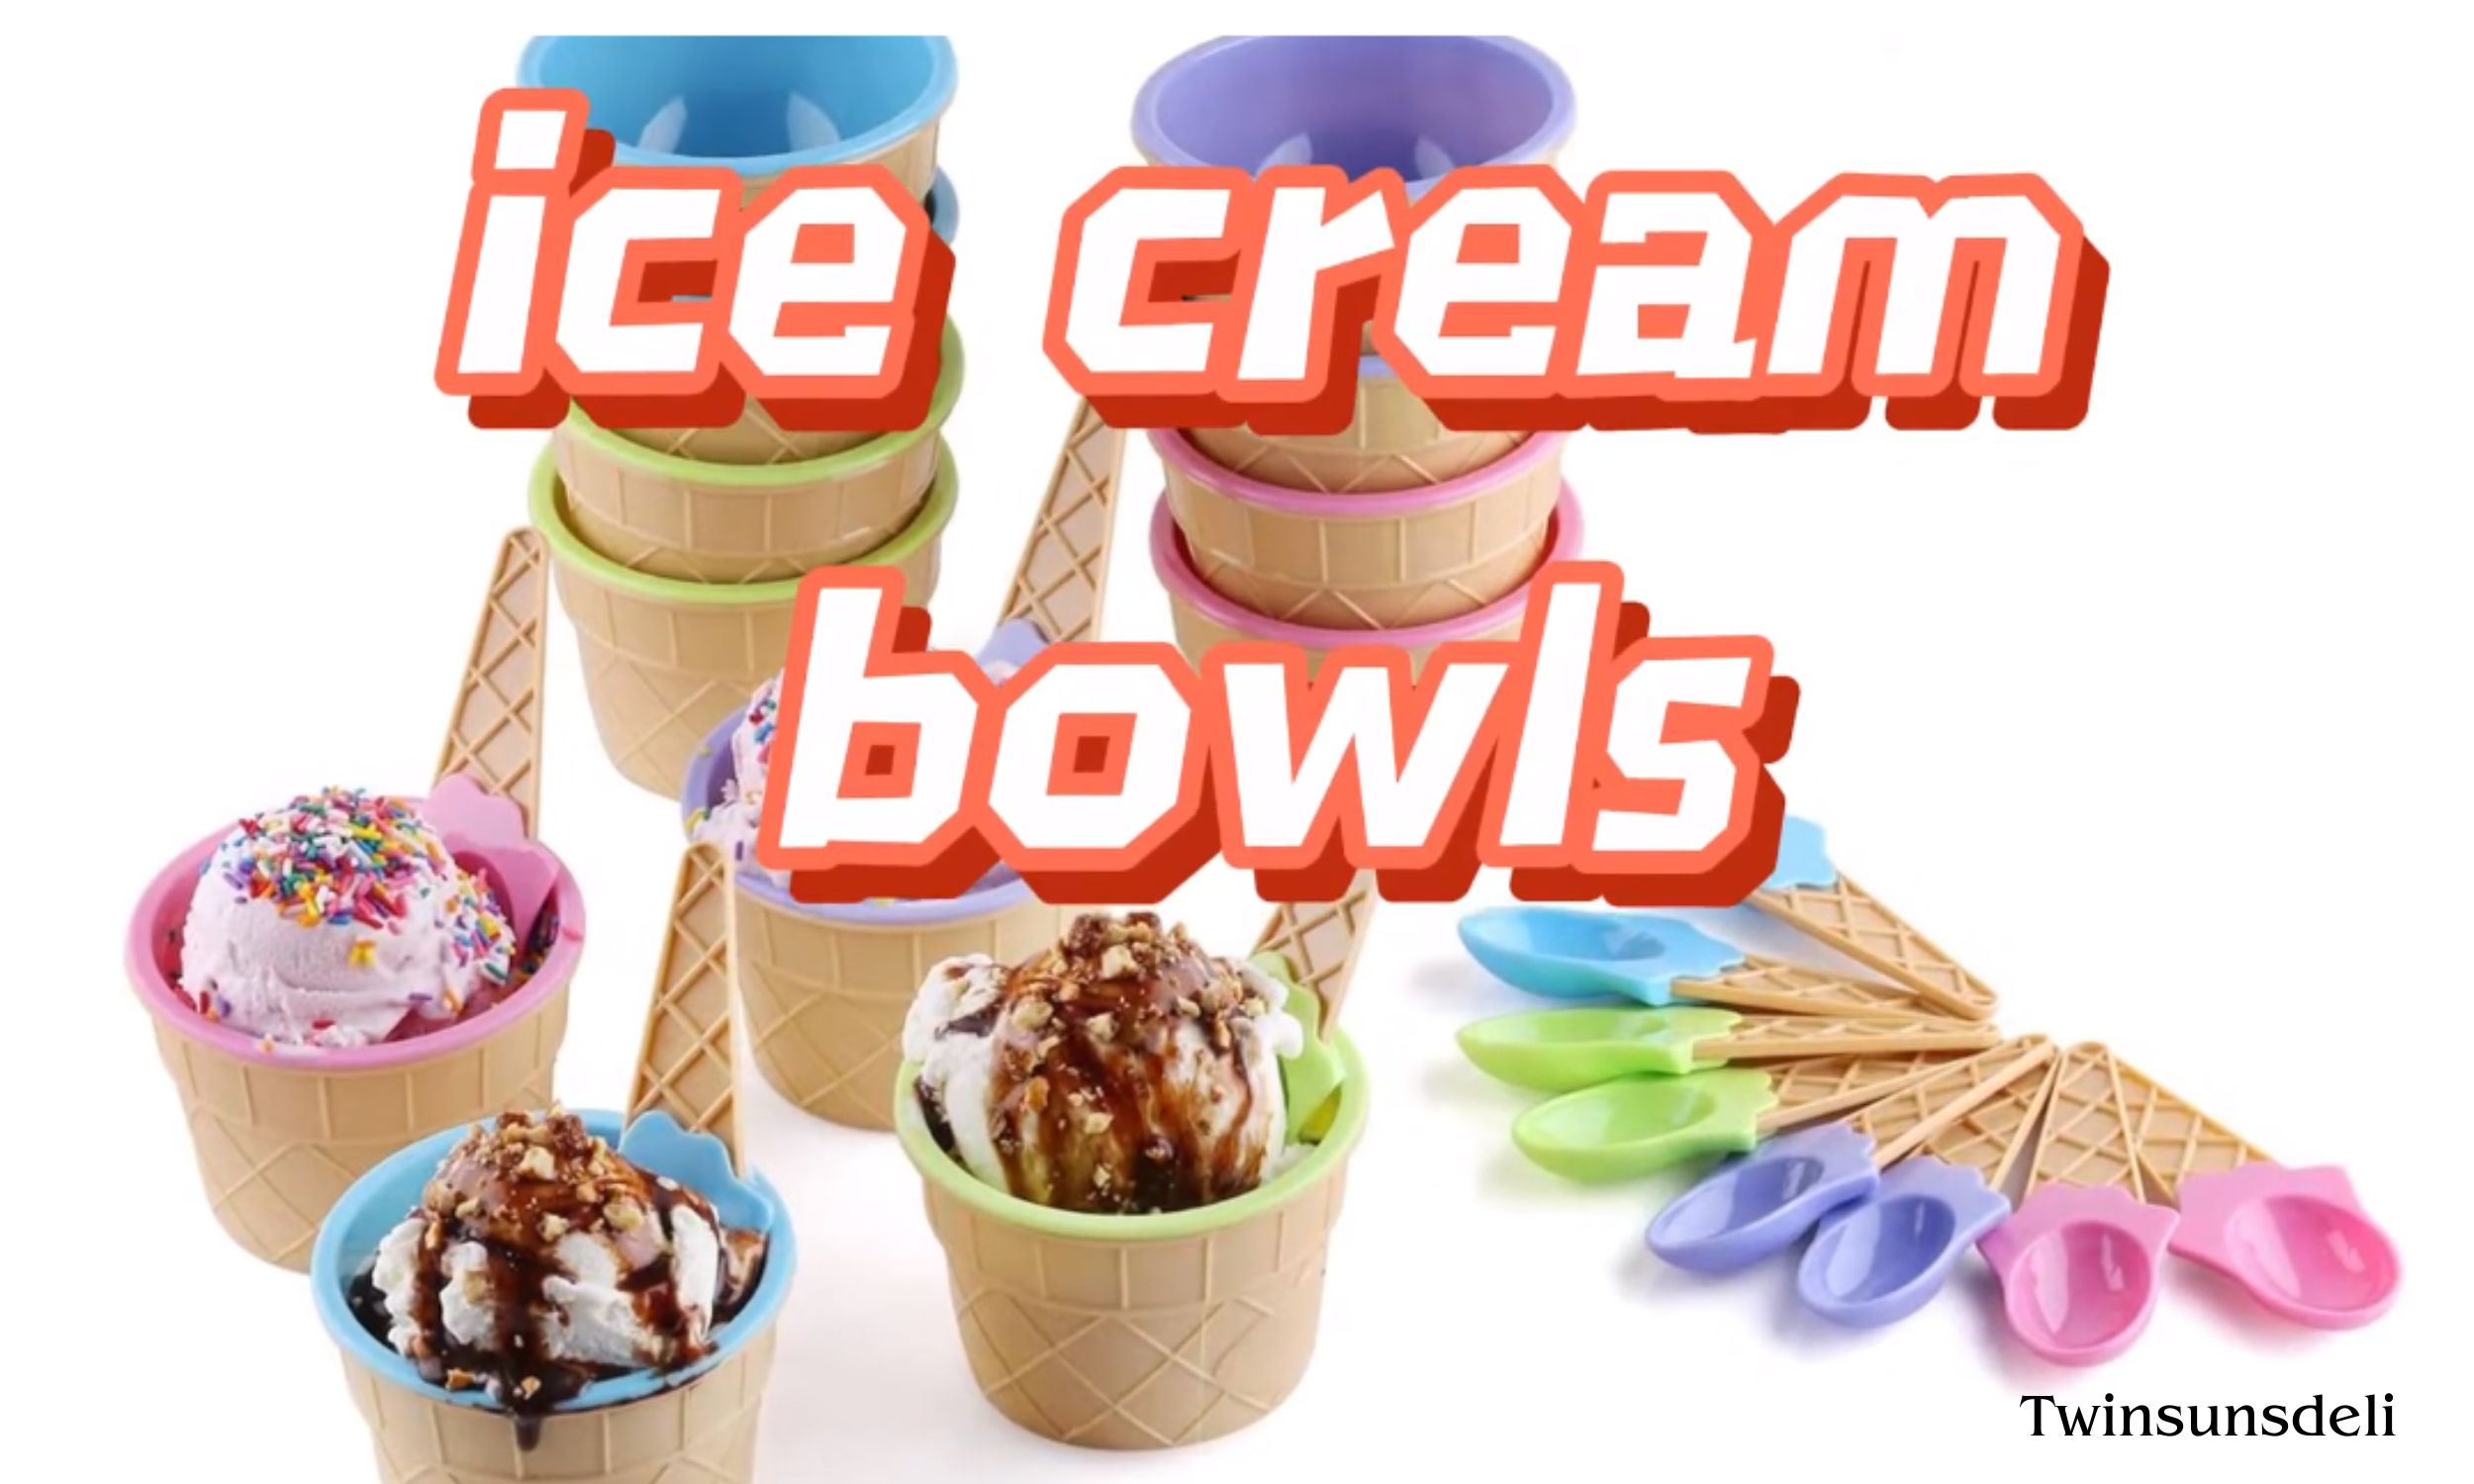 Best ice cream bowls